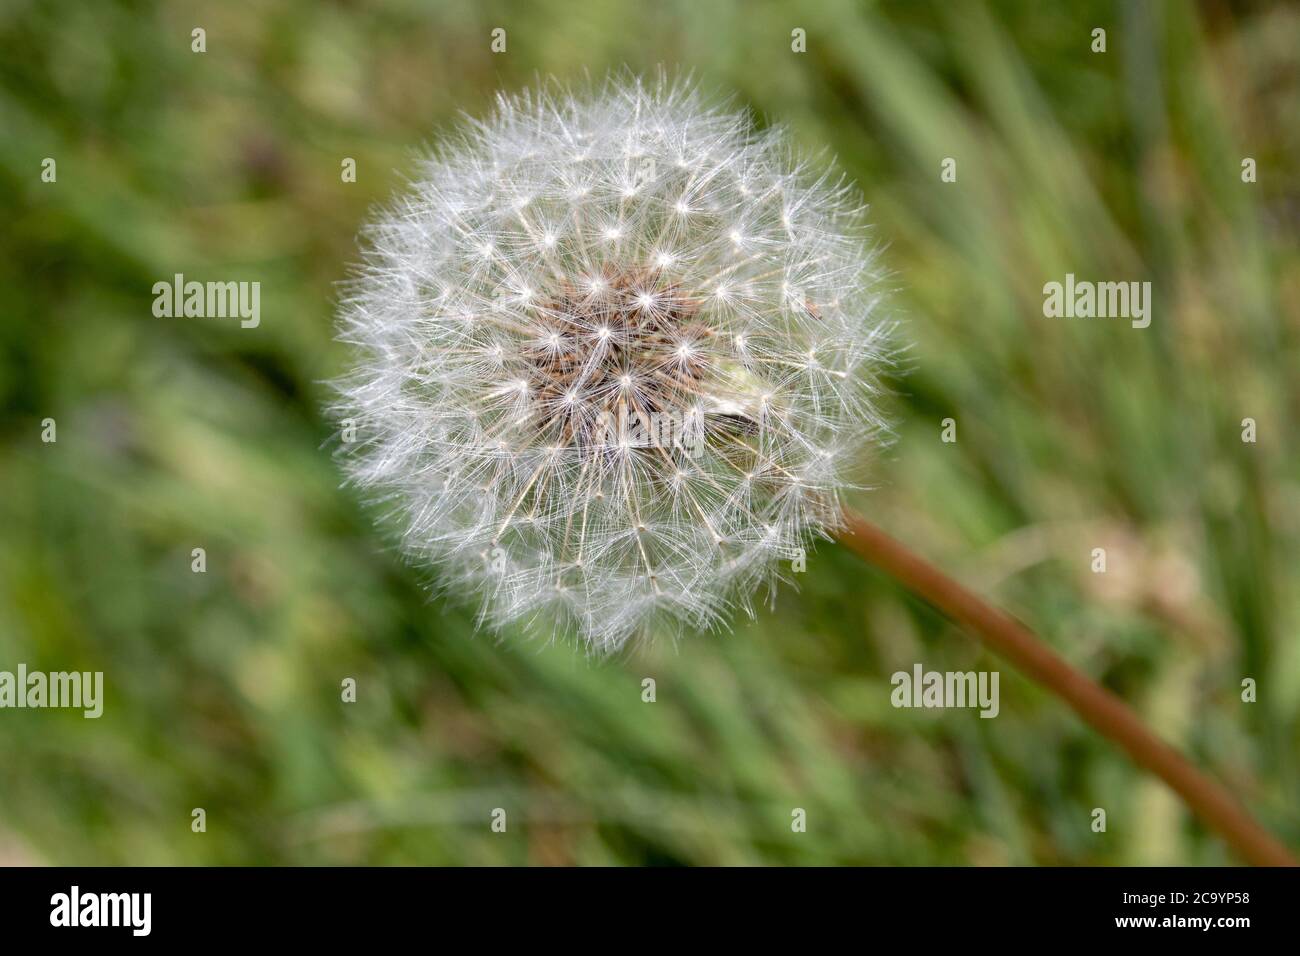 dandelion seed head in a meadow Stock Photo